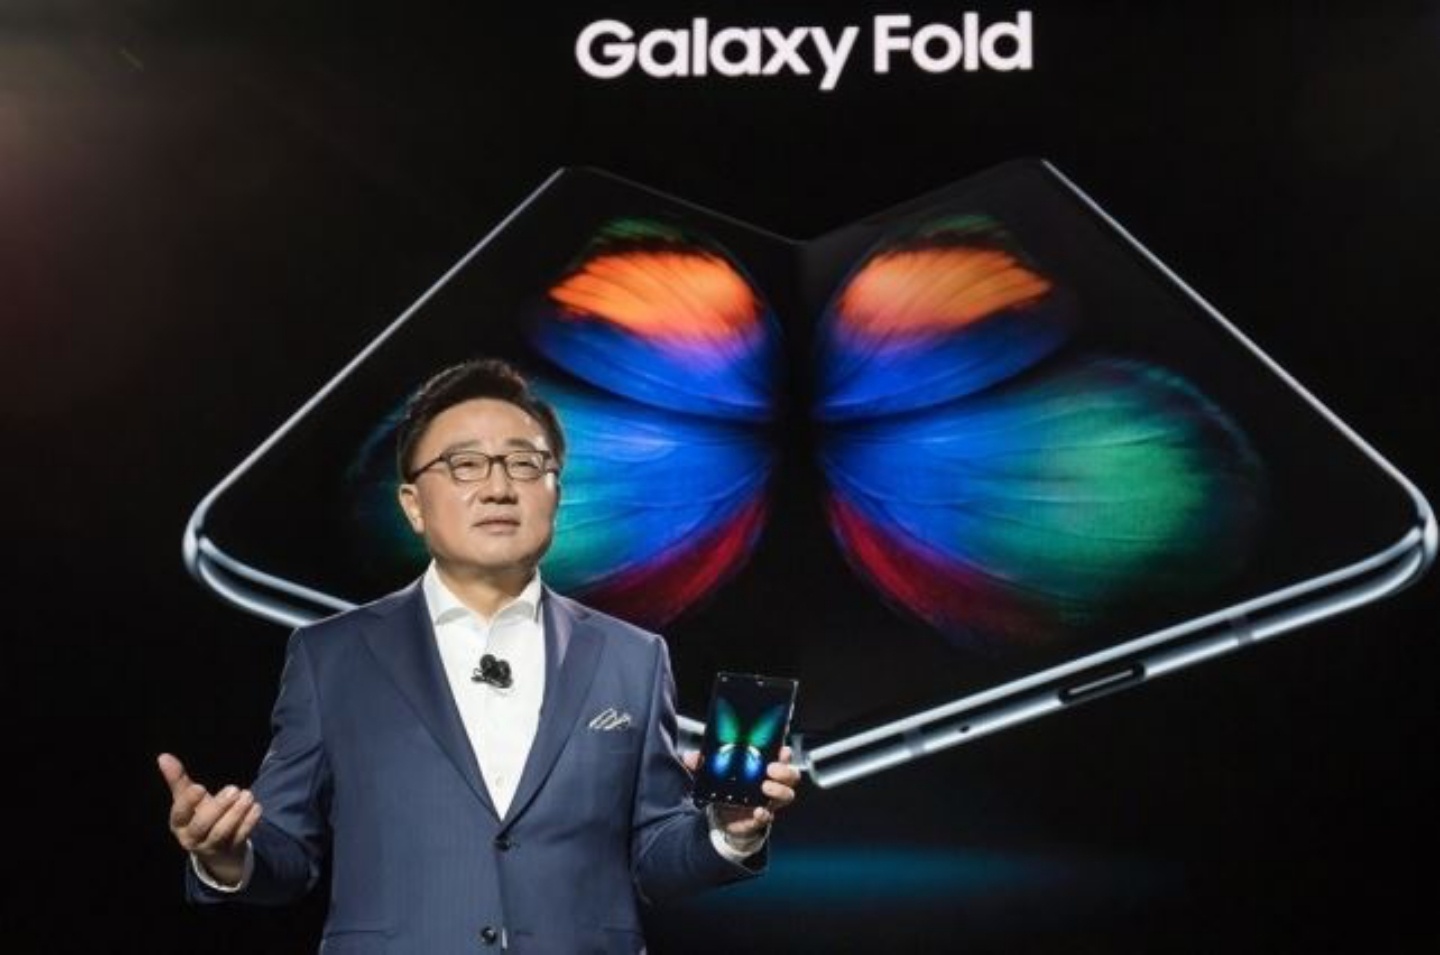 三星總裁回應了Galaxy Fold螢幕異常的原因，將會在解決後盡快宣布重新上市資訊